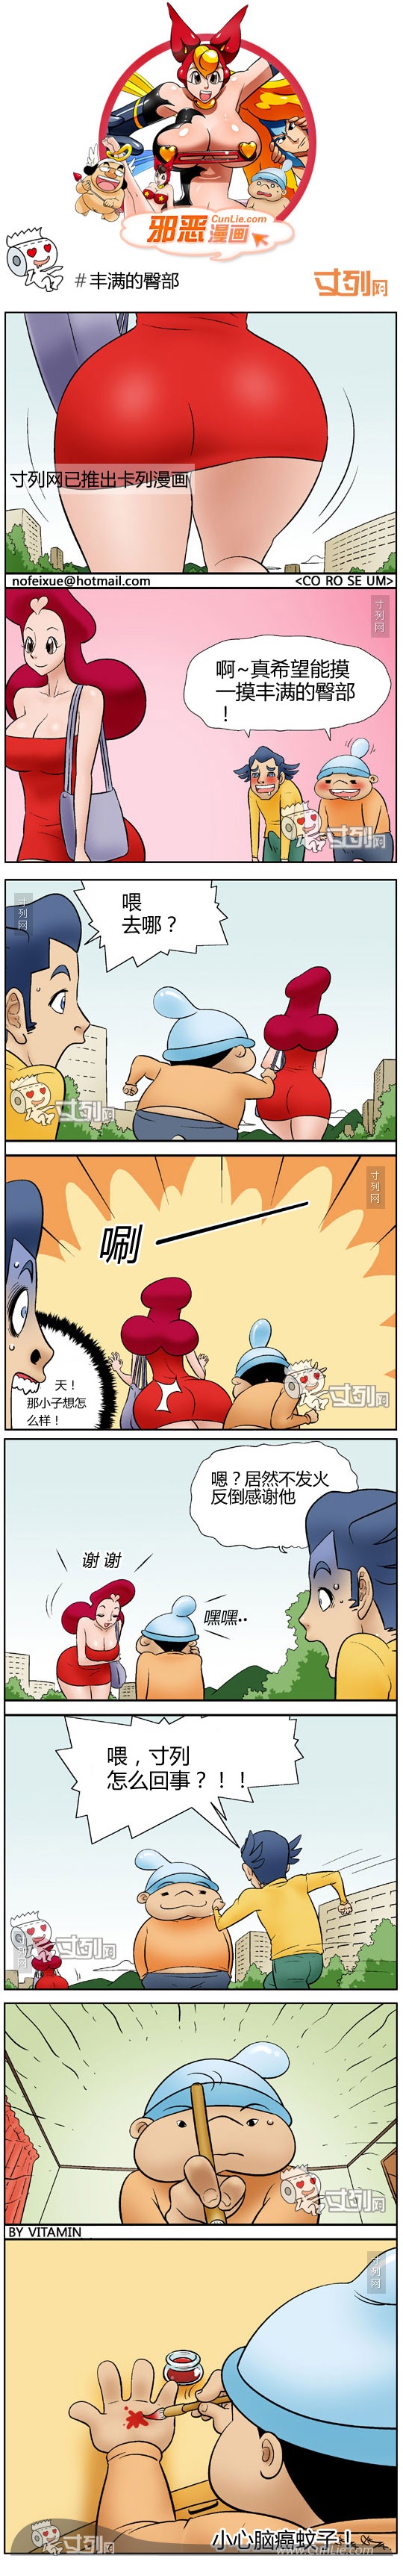 韩国搞笑成人漫画之丰满的臀部